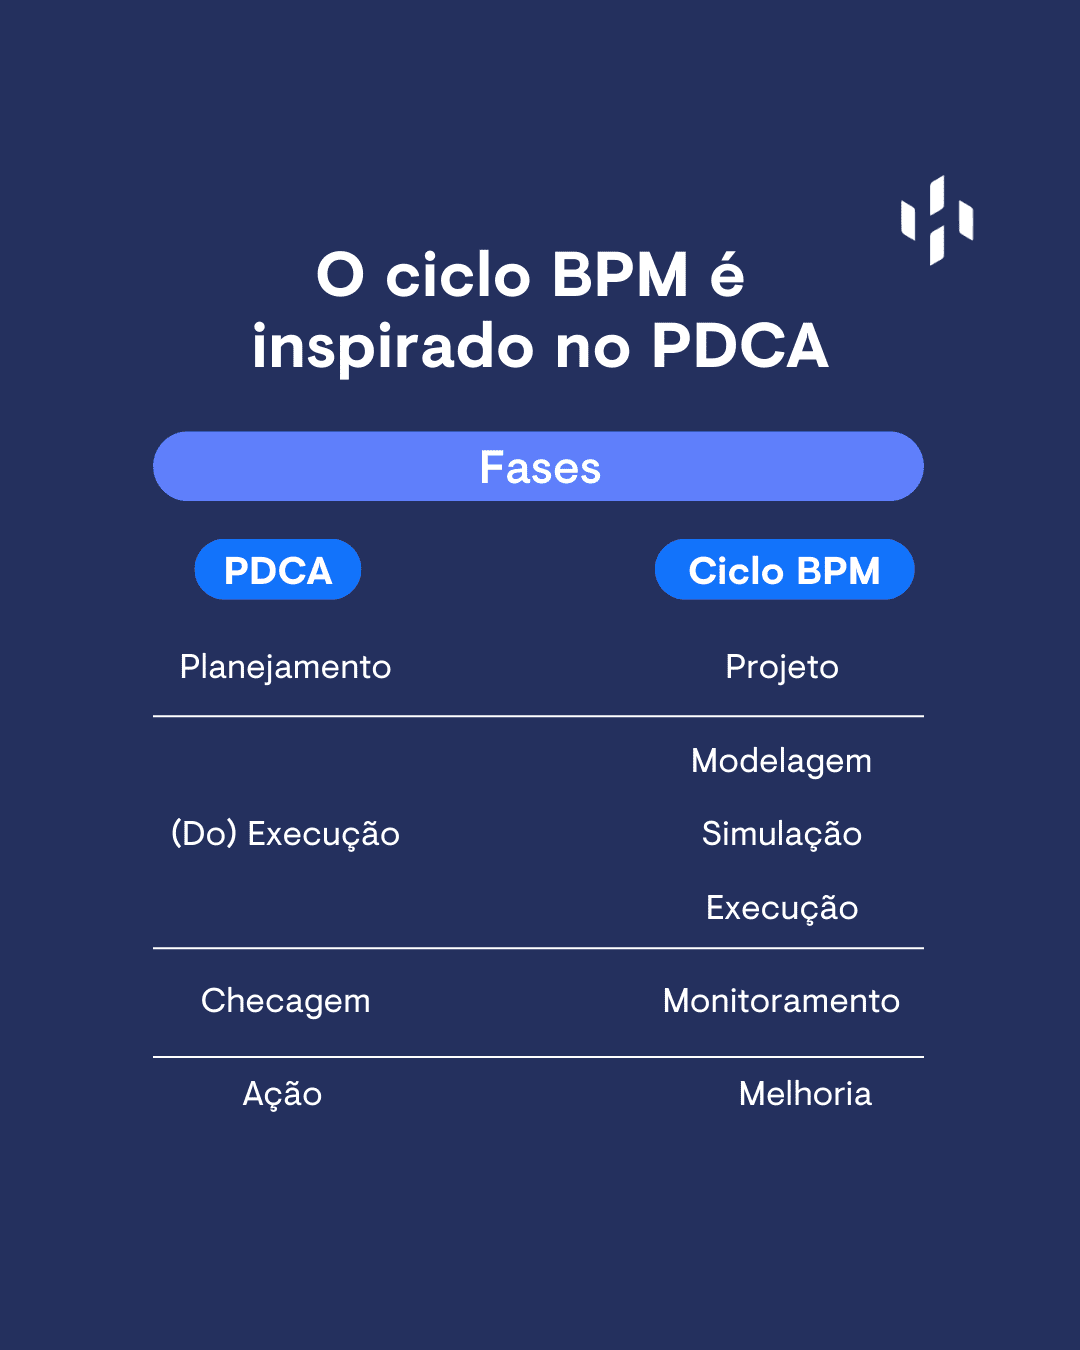 Na imagem vemos uma comparação entre o ciclo BPM e o ciclo PDCA com as etapas e equivalência de cada uma.